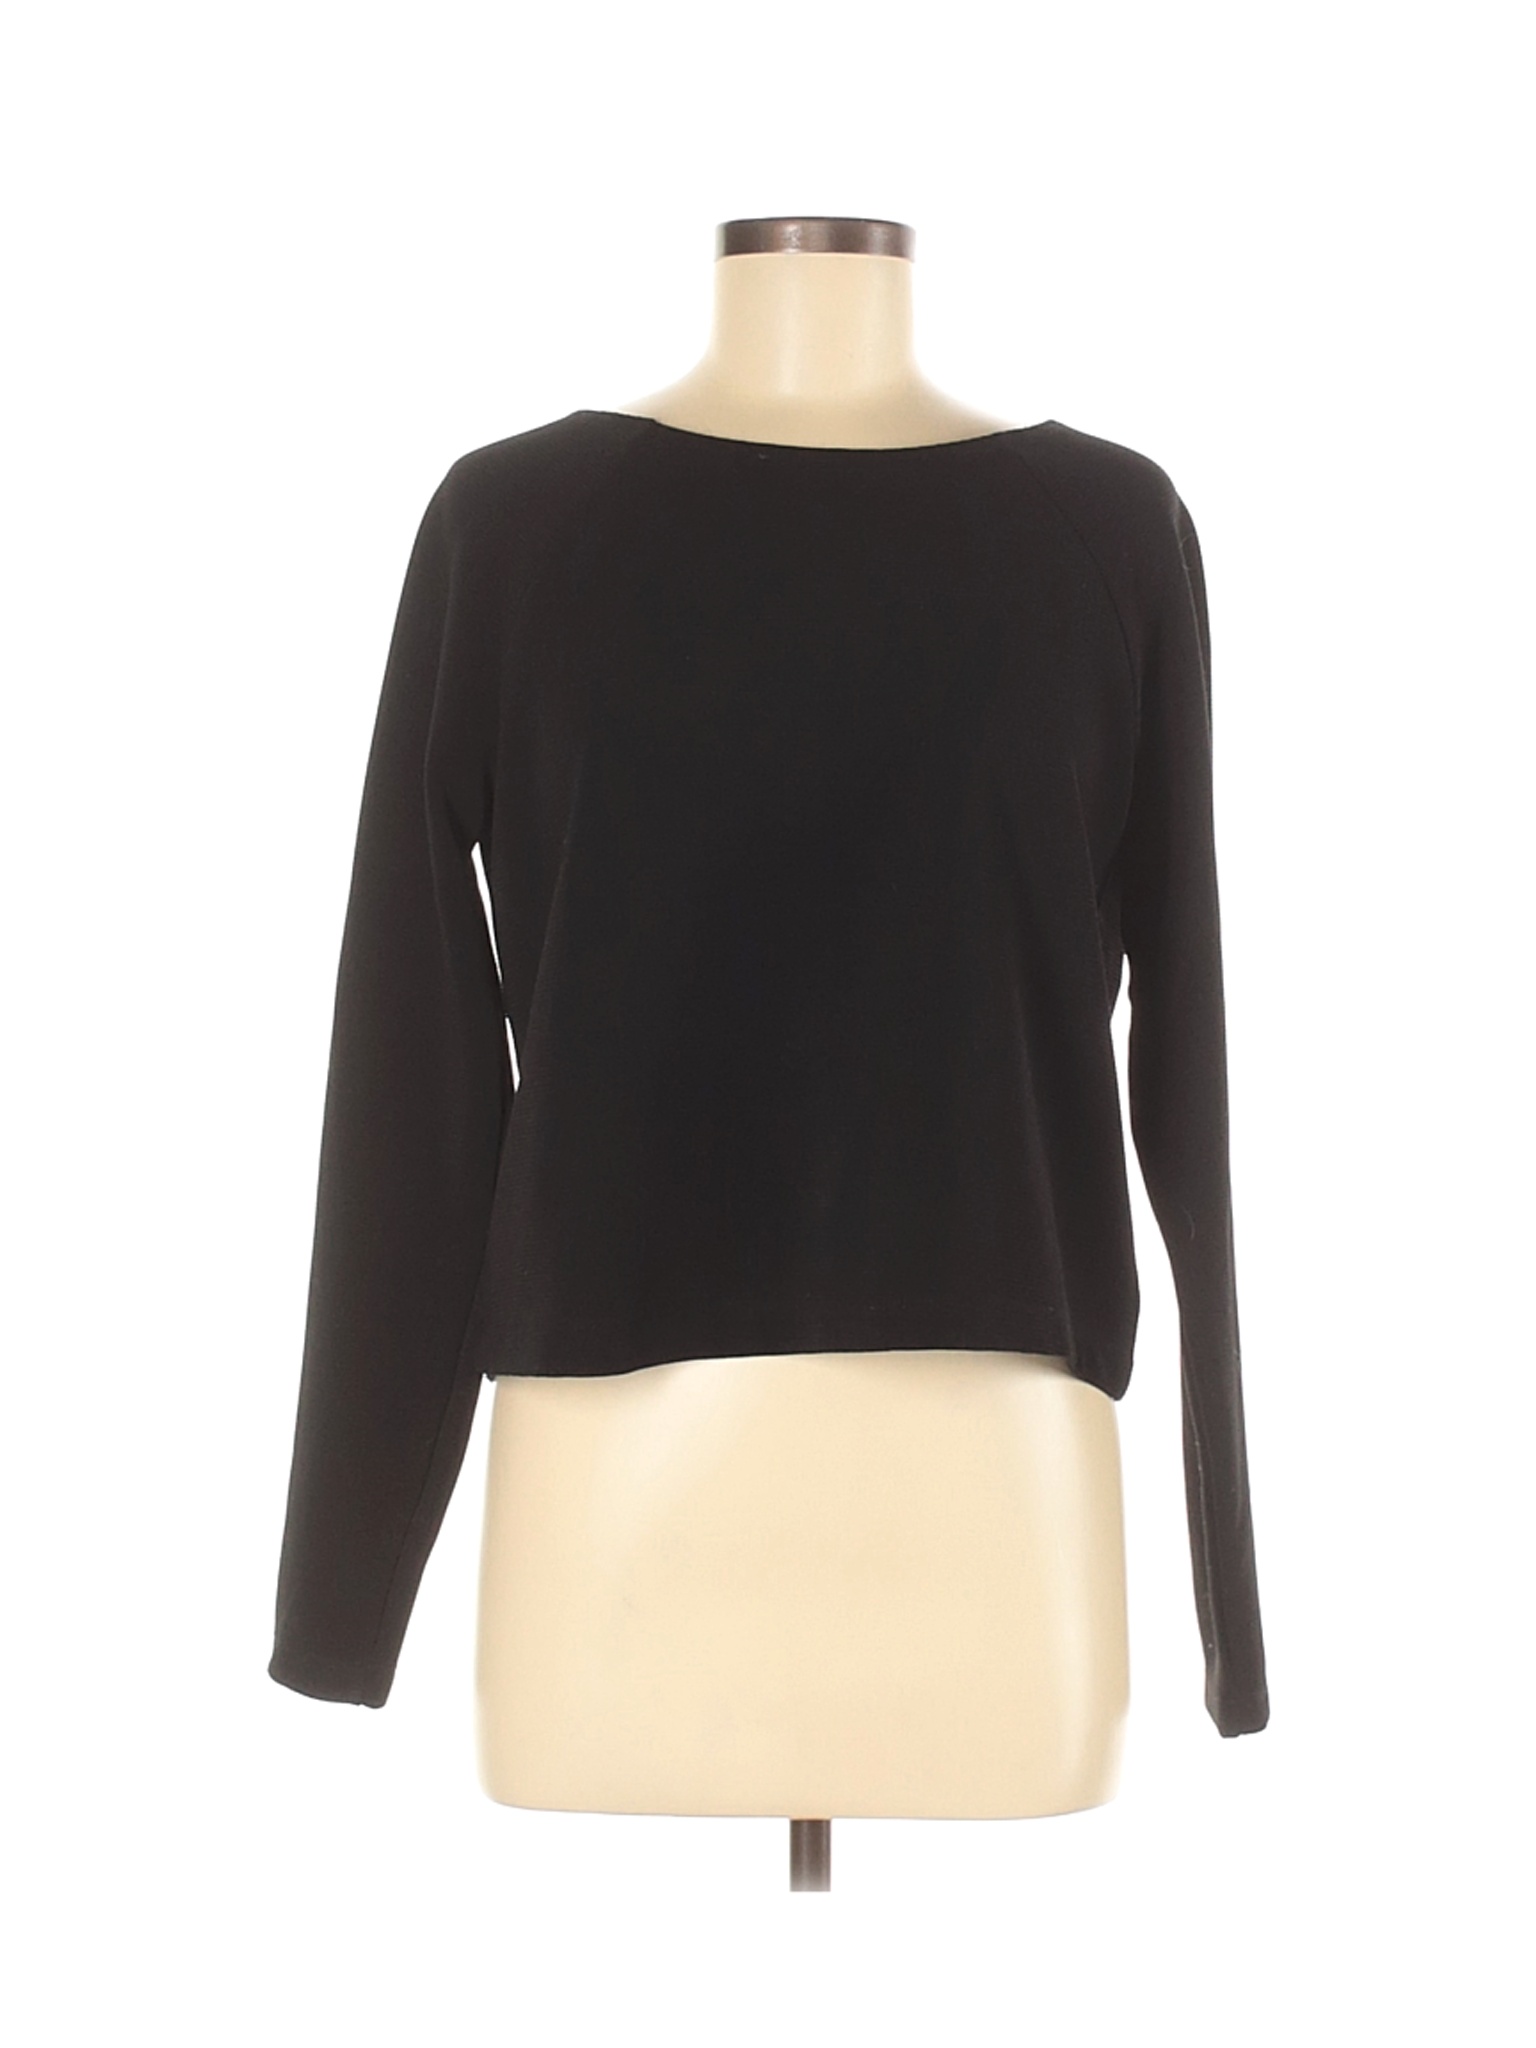 Forever 21 Women Black Pullover Sweater M | eBay